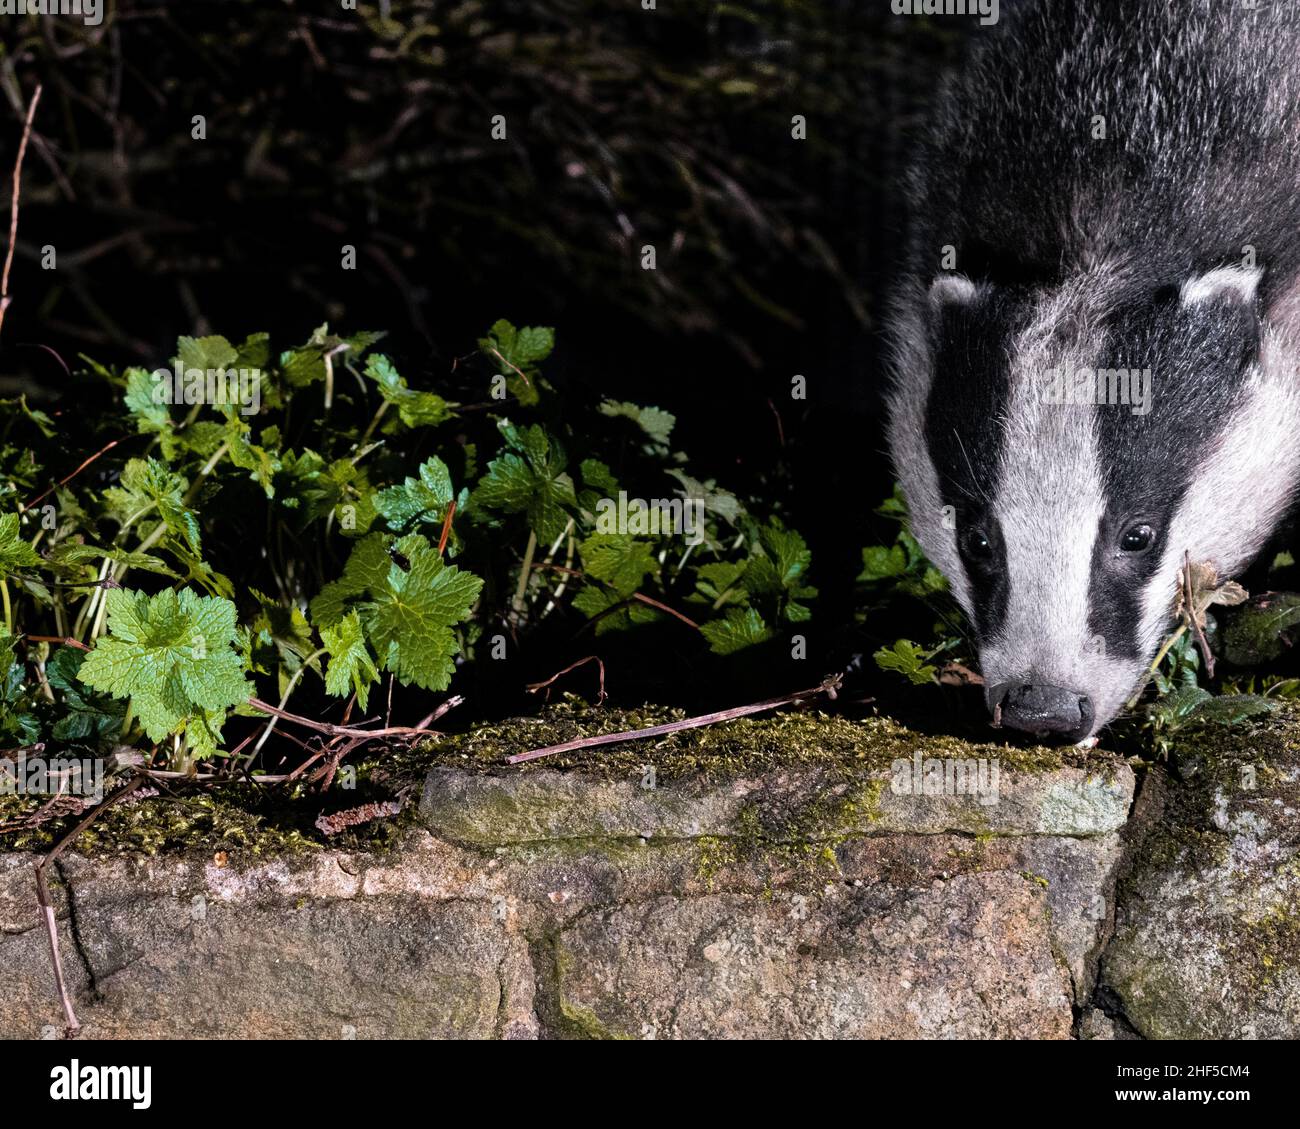 Badger, renard, la souris en bois se nourrissant dans le jardin capturé à l'aide de la technologie de piège d'appareil photo reflex numérique Banque D'Images